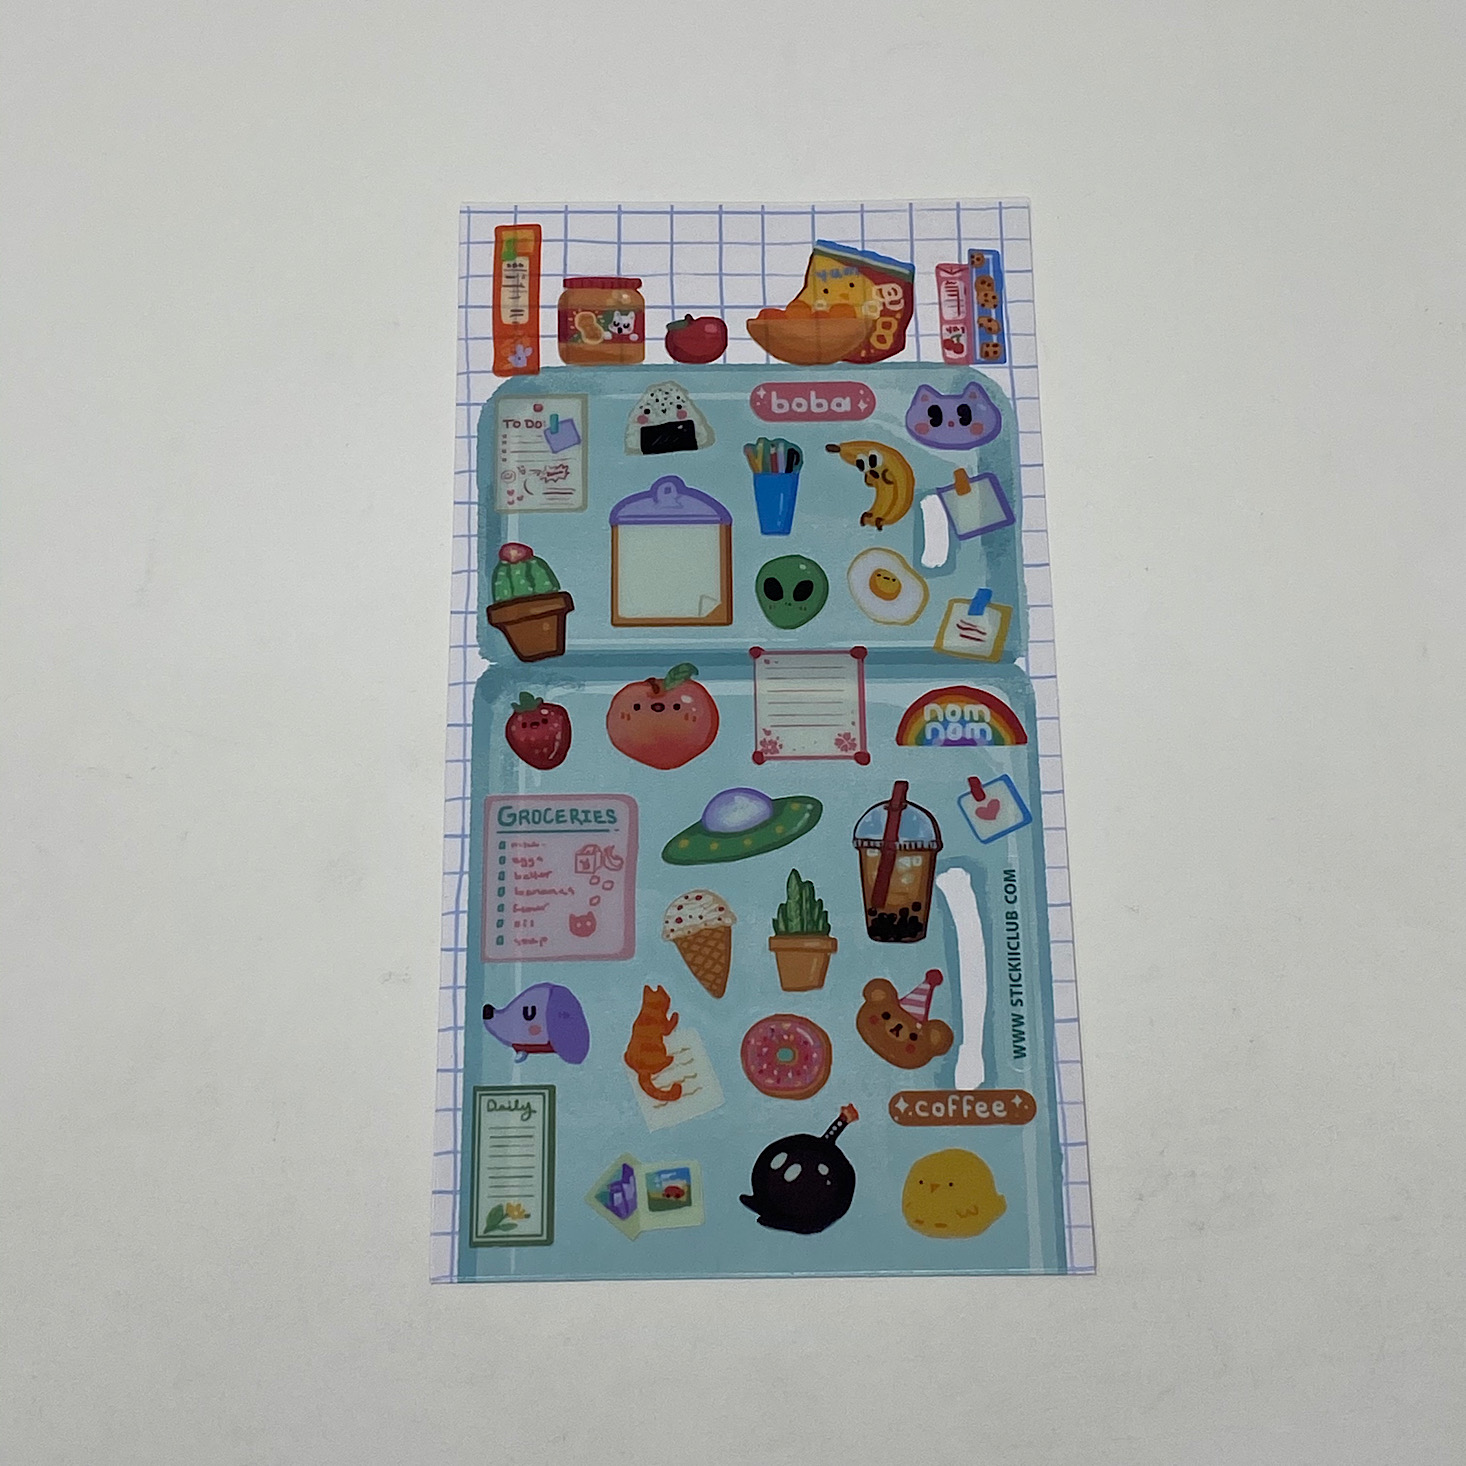 Stickii Sticker Cute Pack Review - July 2020 | MSA